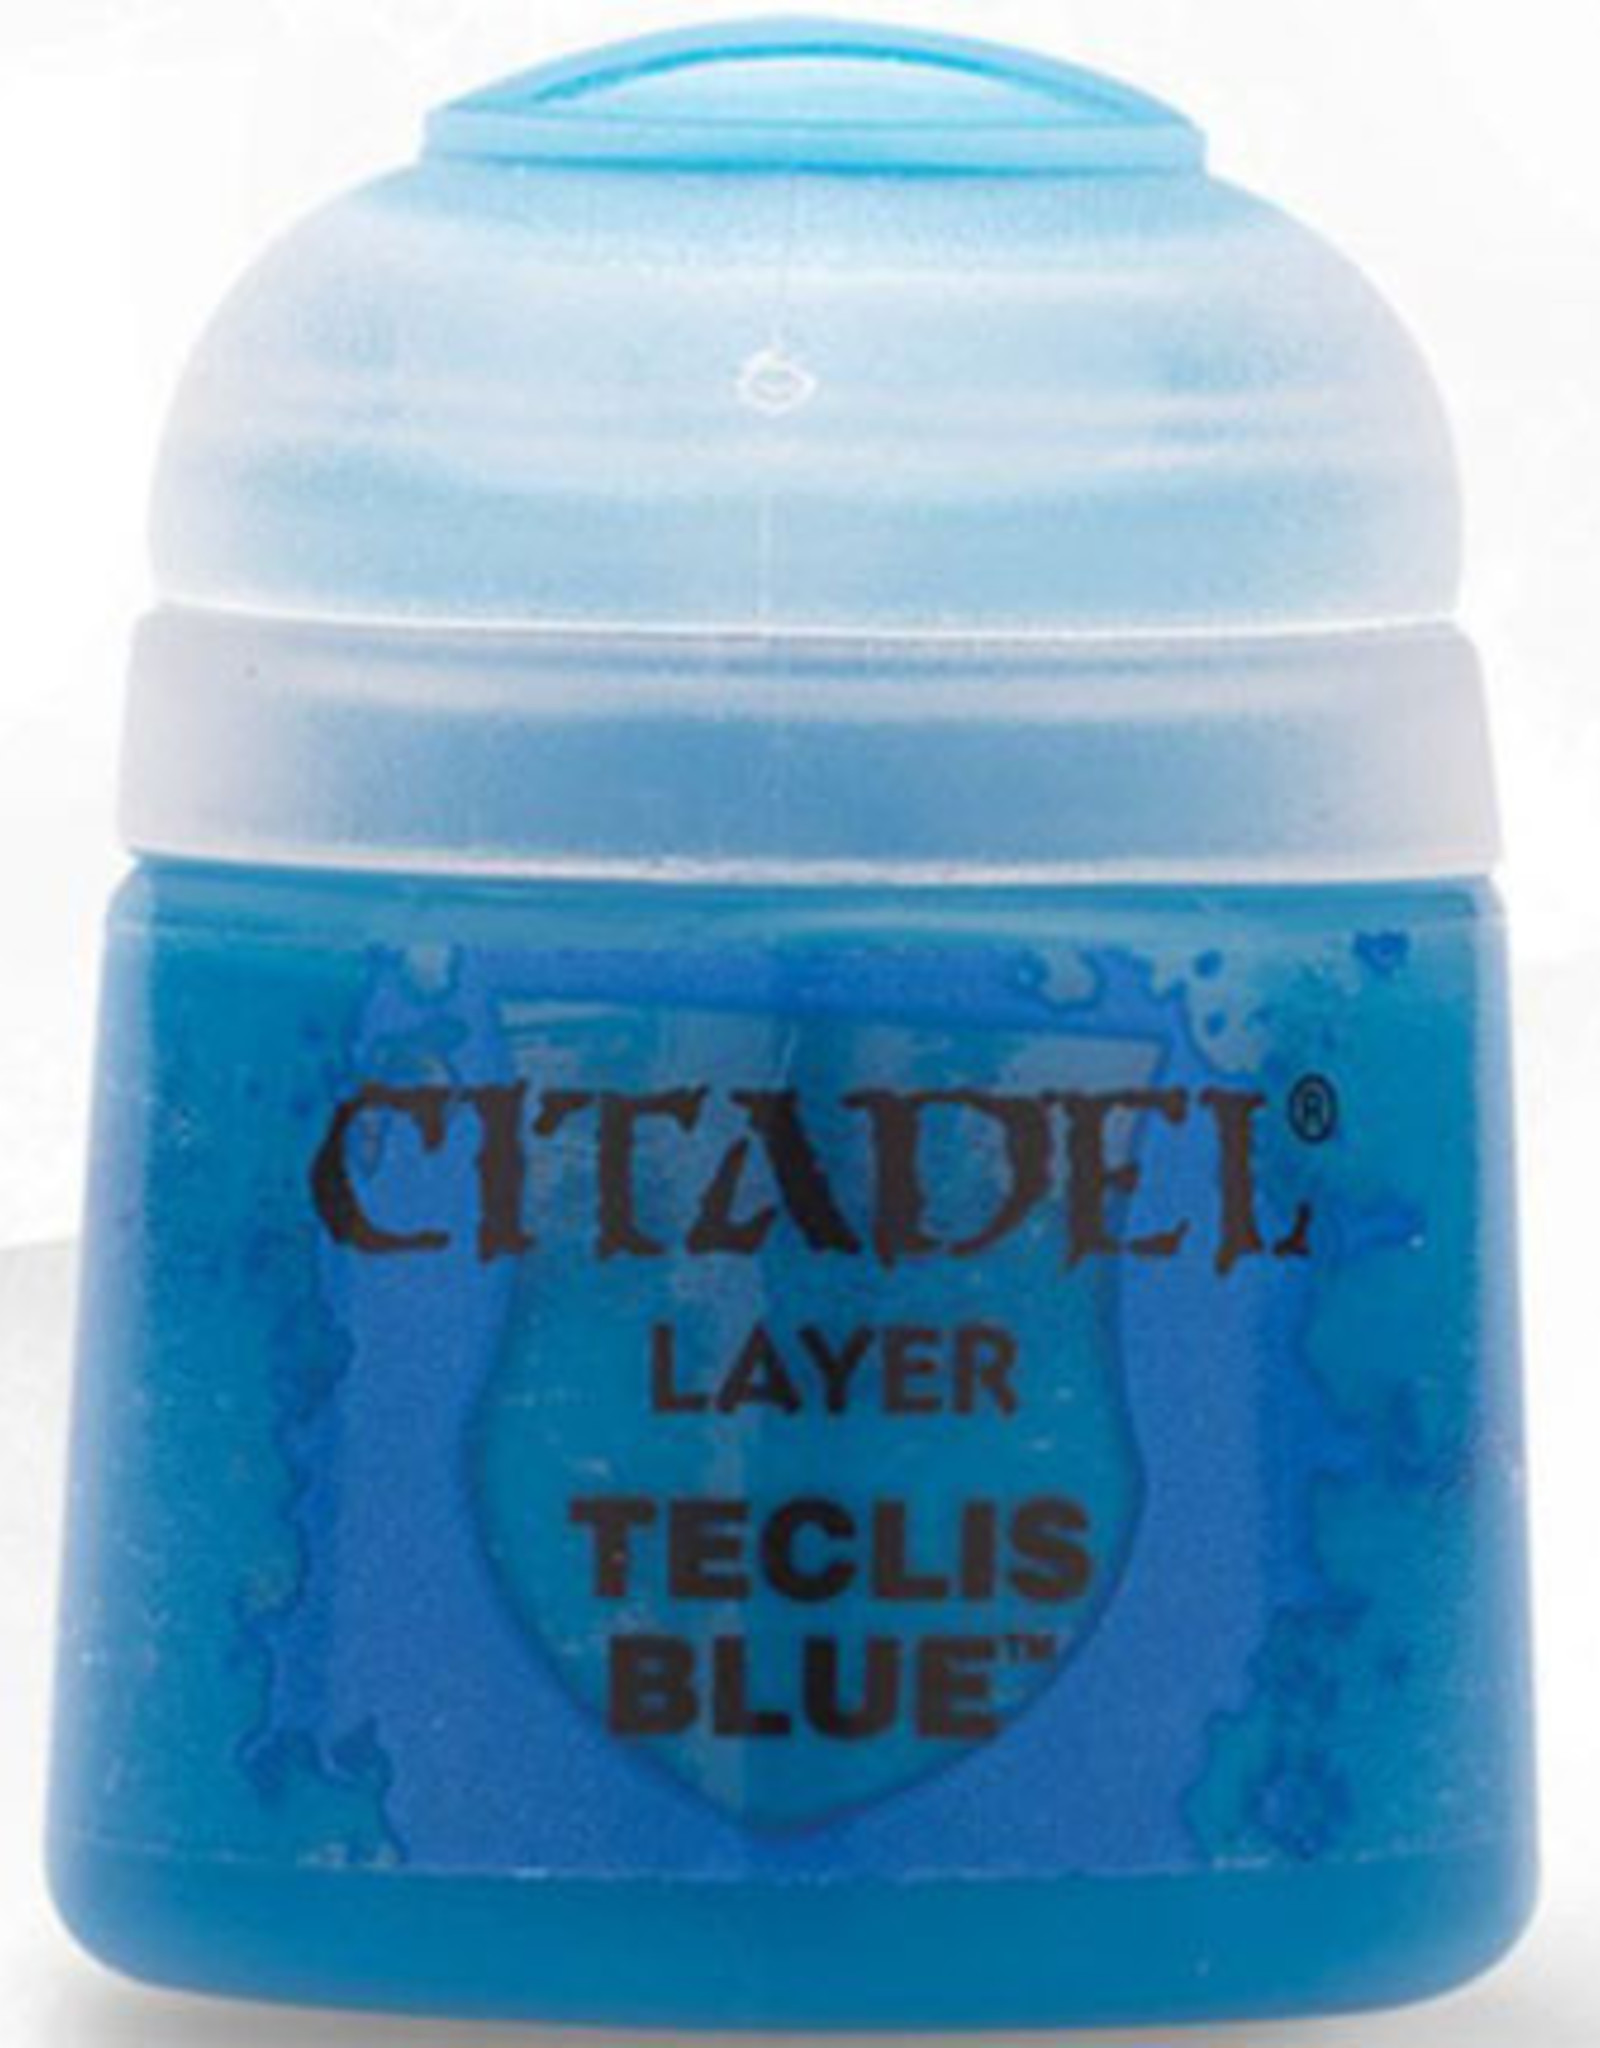 Games Workshop Citadel Layer: Teclis Blue